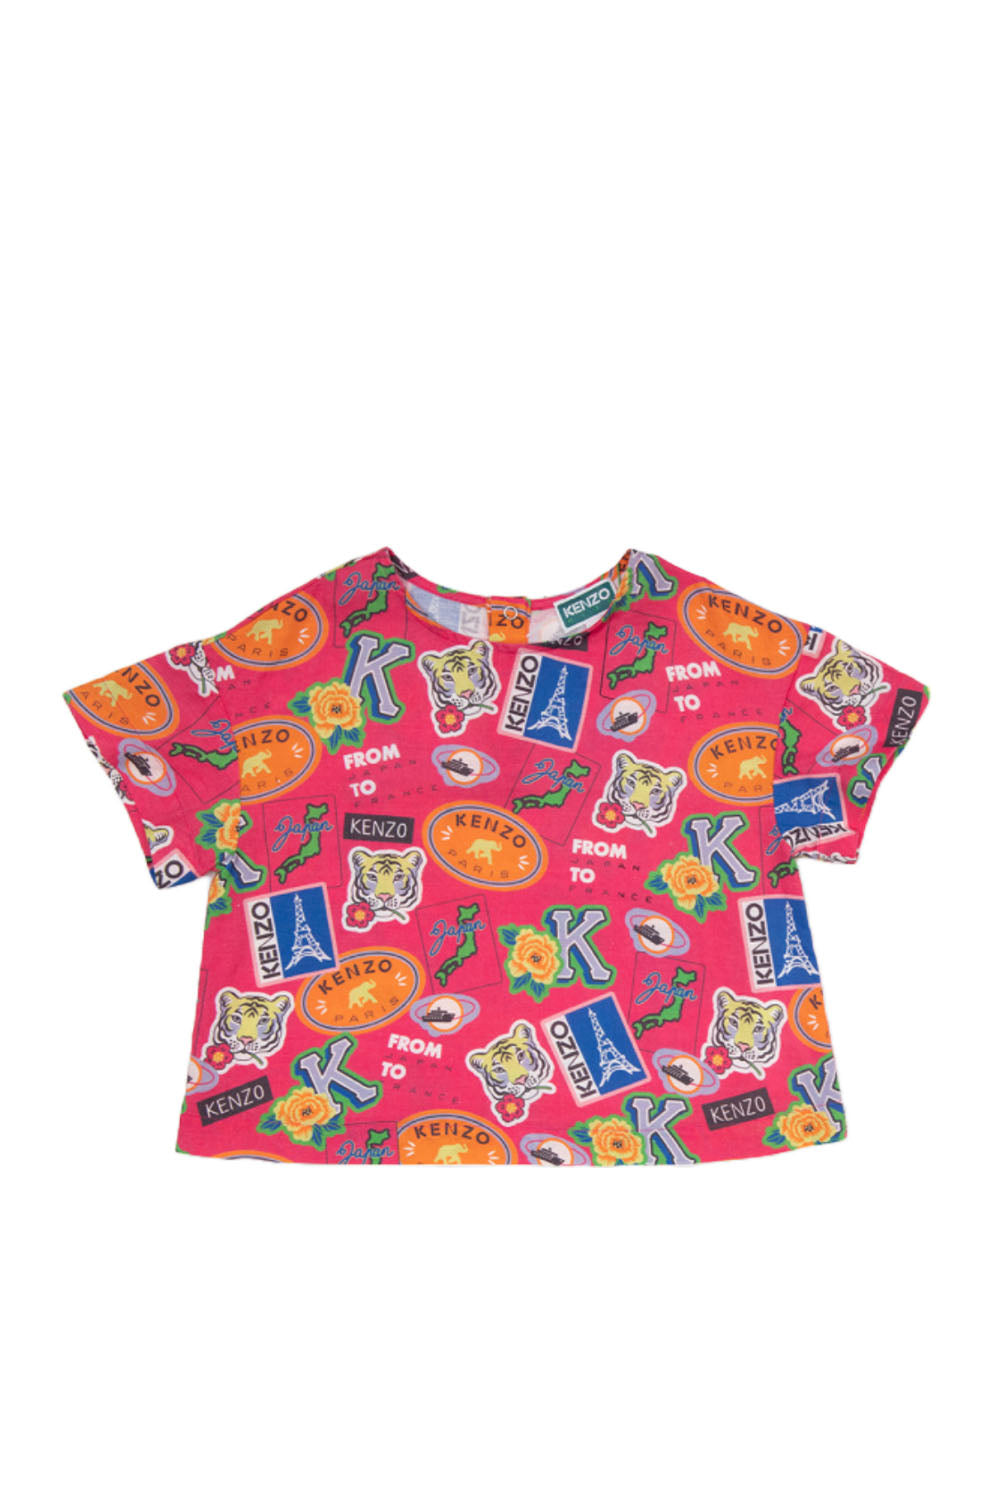 All-Over Print Short Sleeves Shirt for Girls All-Over Print Short Sleeves Shirt for Girls Maison7